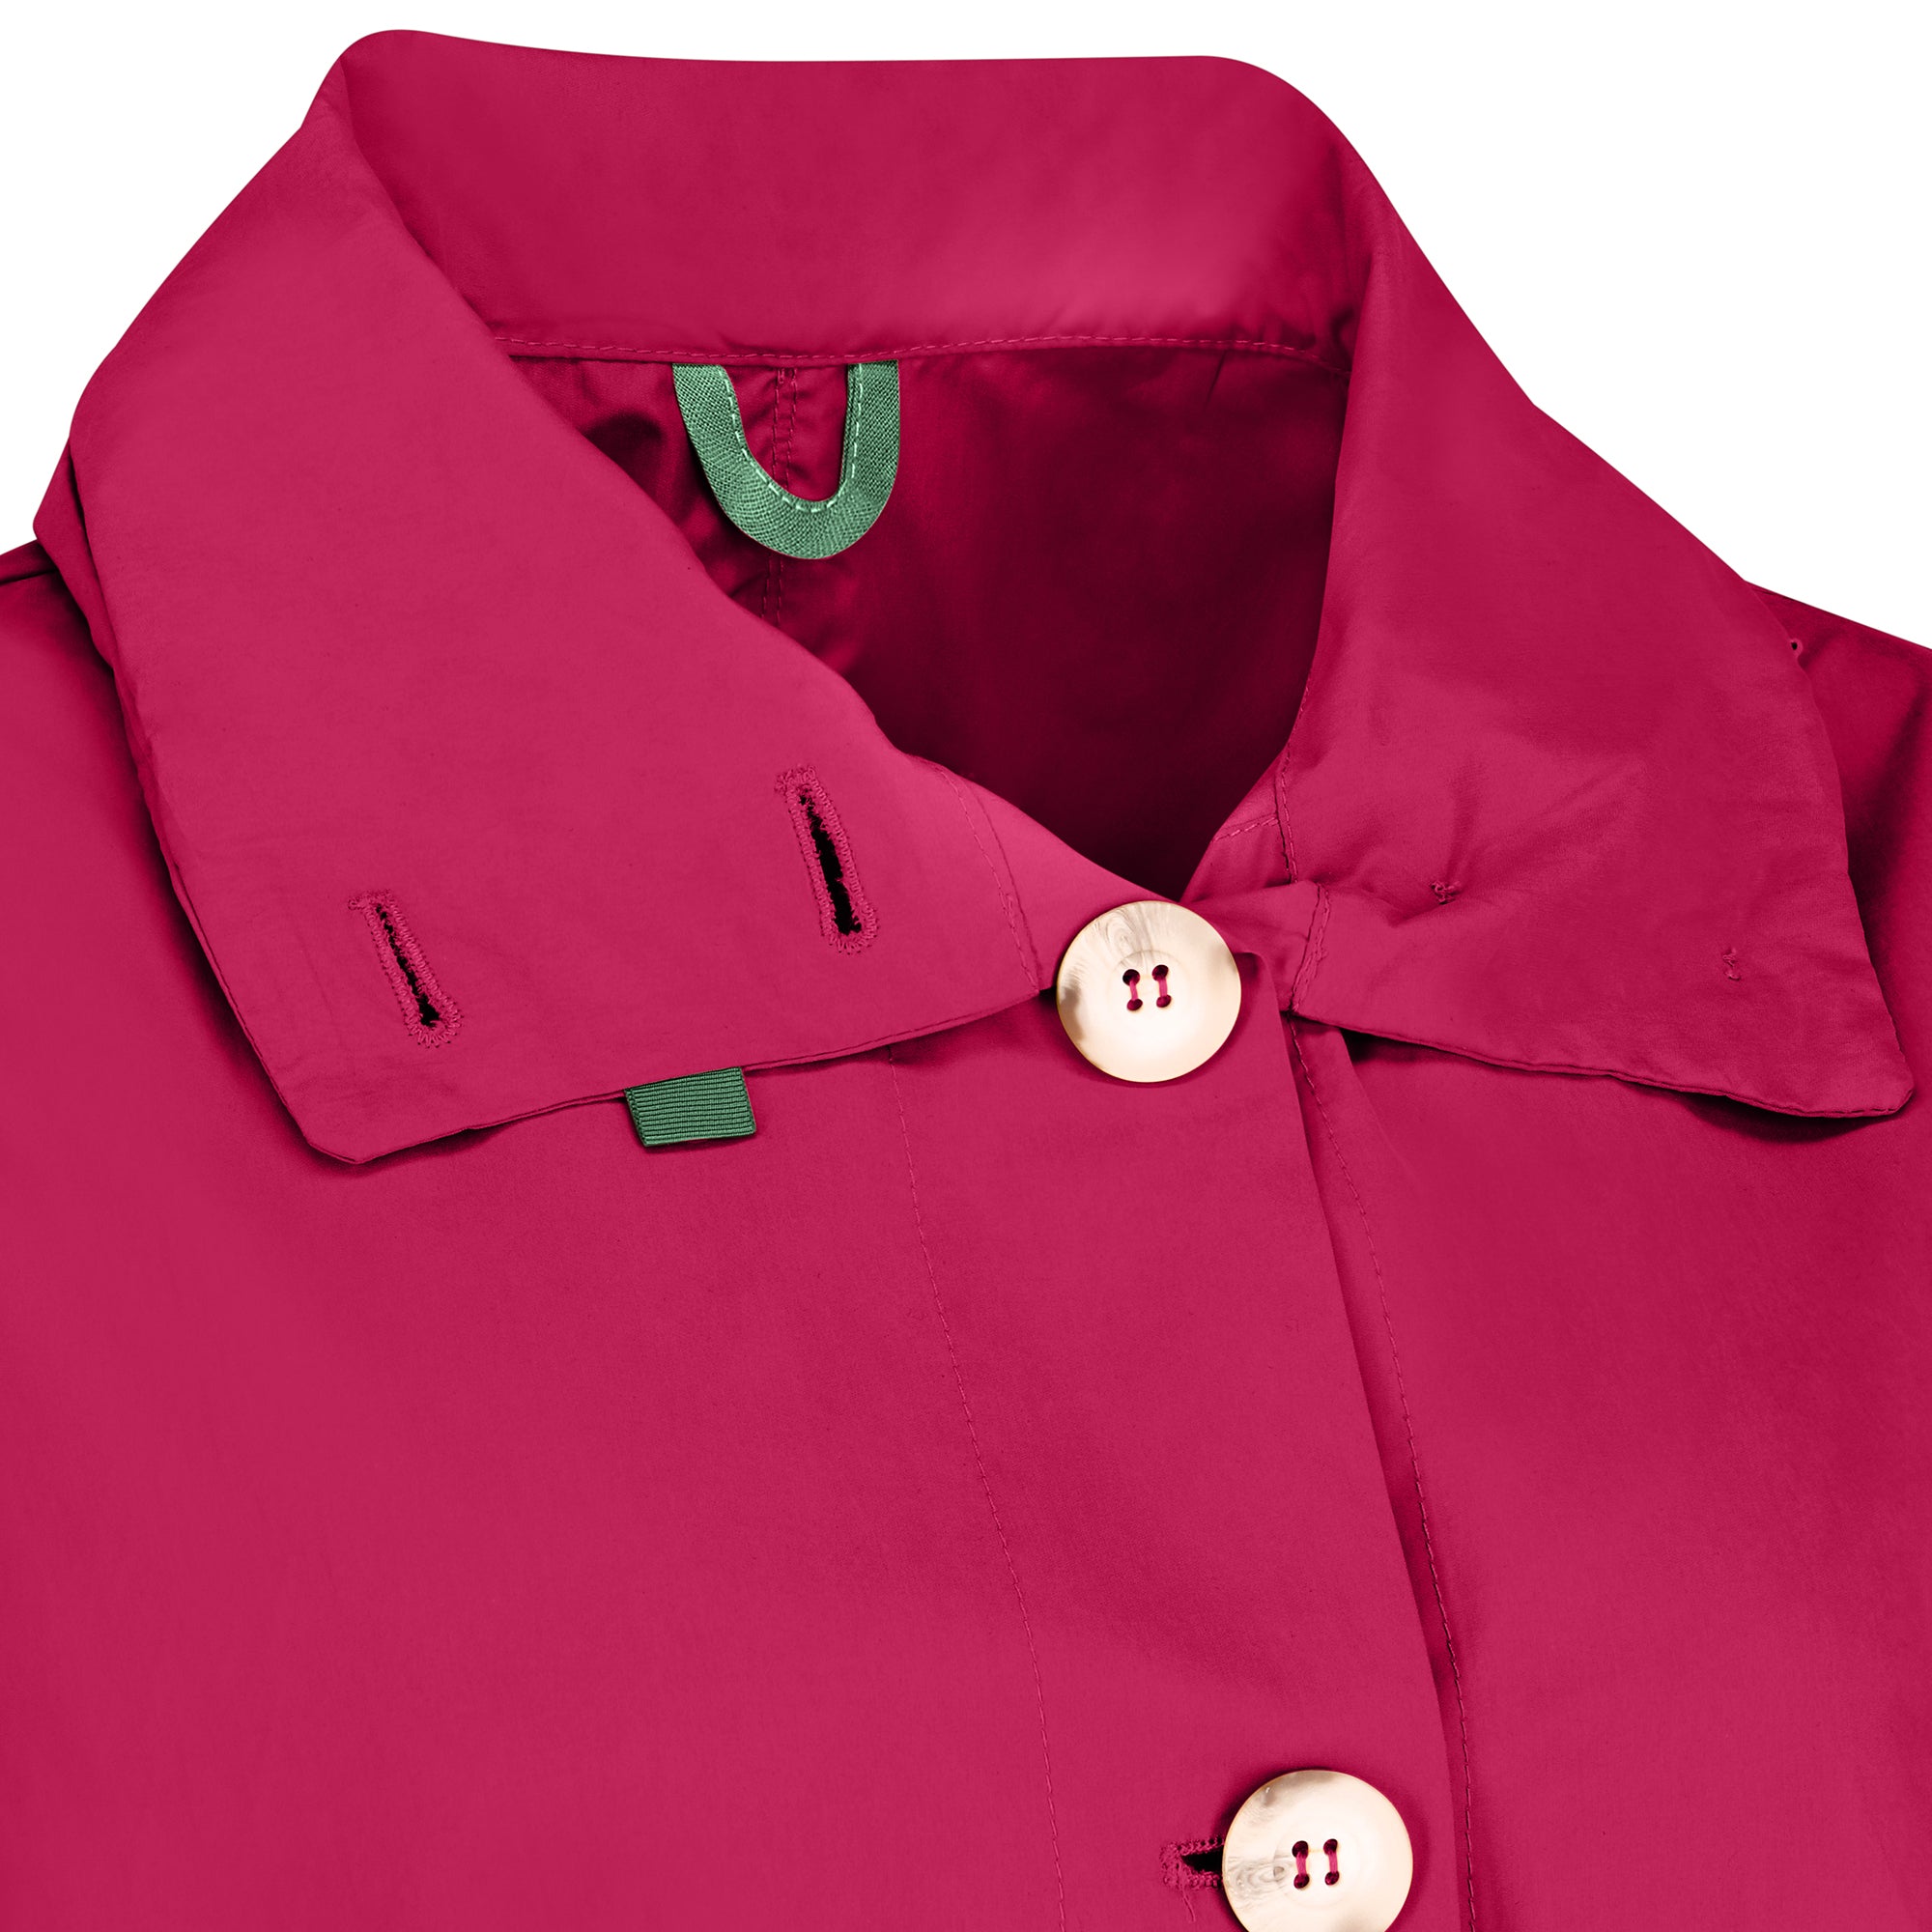 Bise raincoat - Cherry color - neckline detail